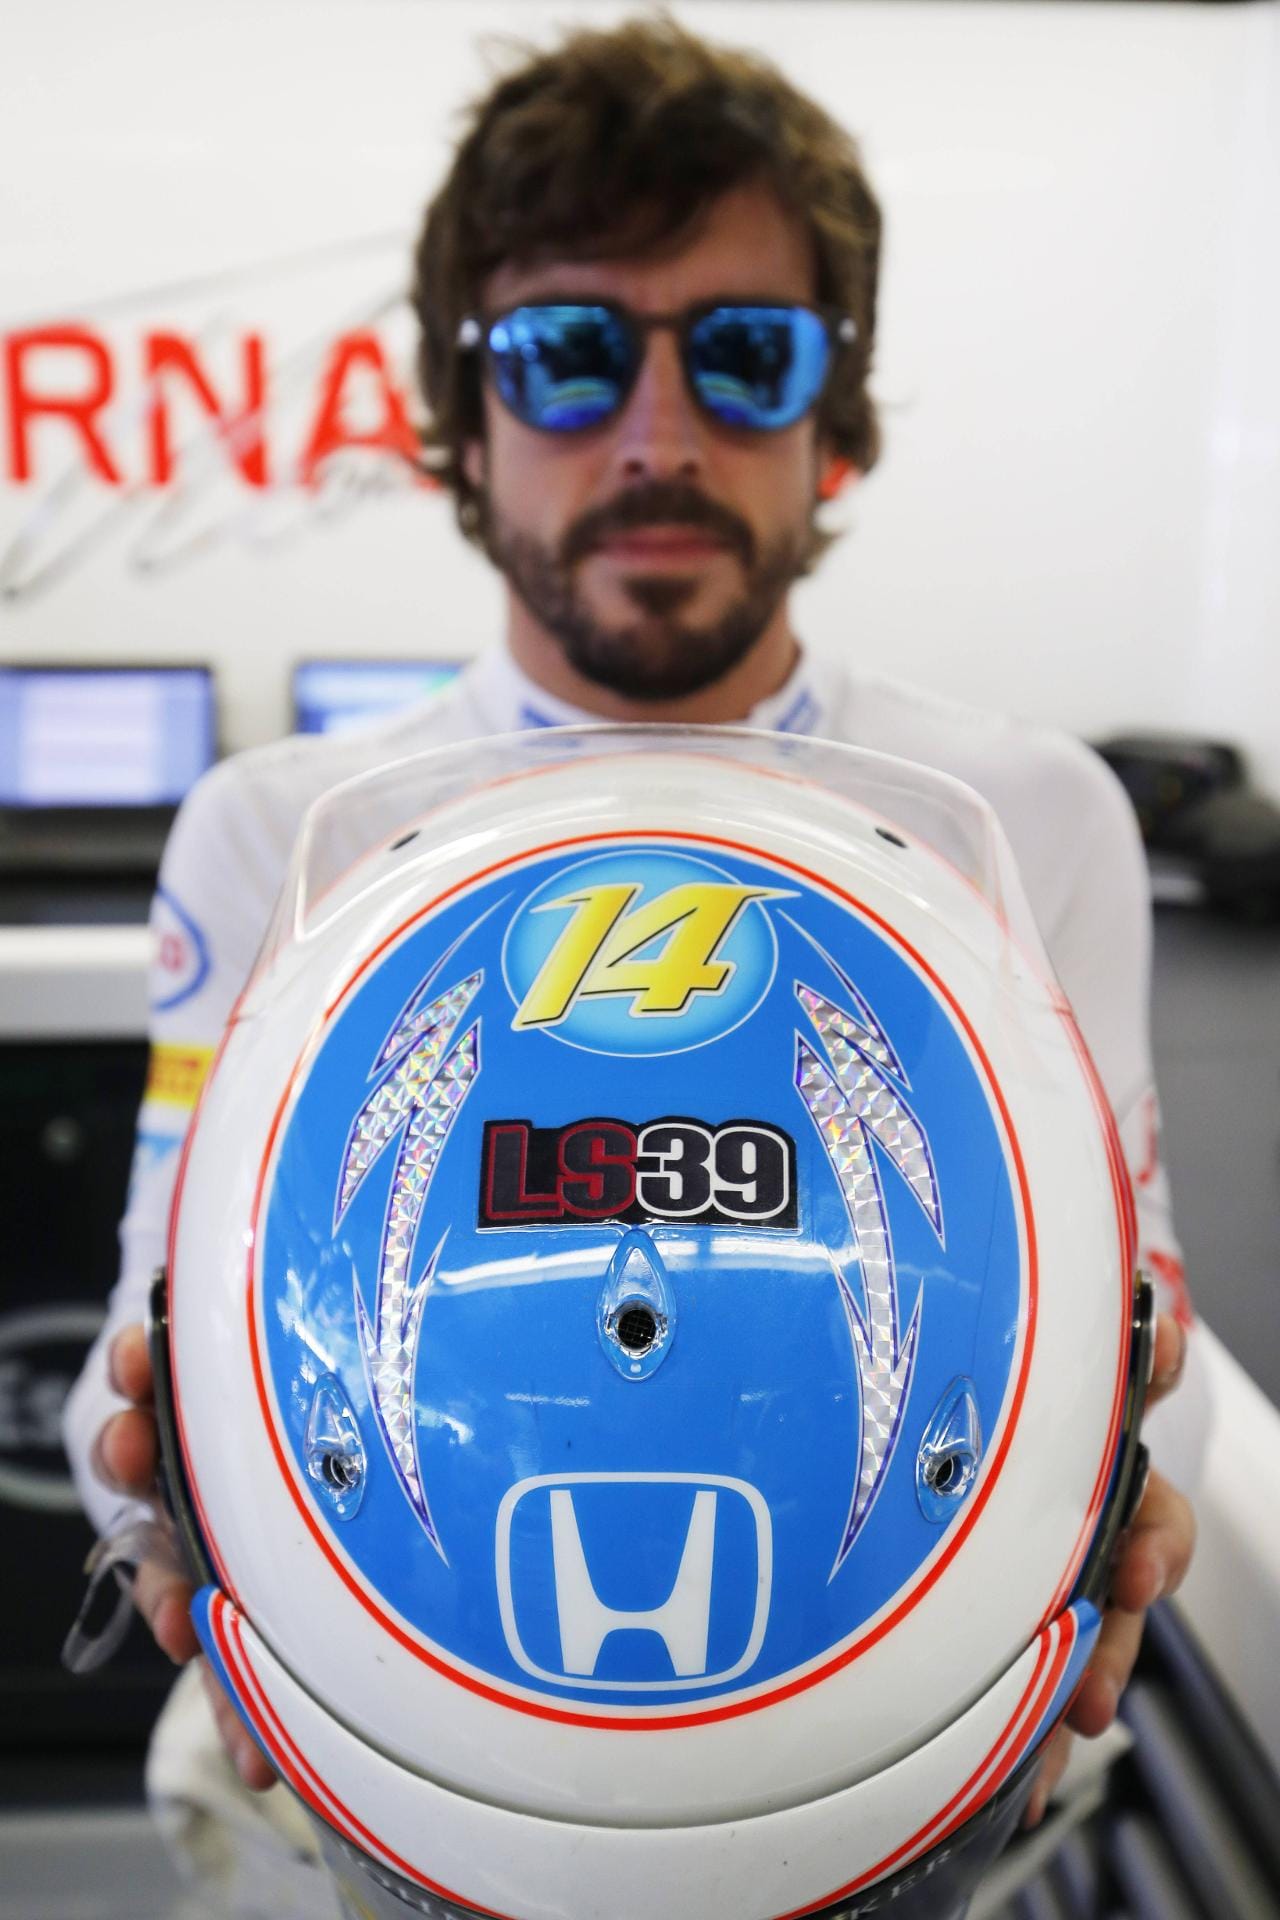 Ehrerbietung: Fernando Alonso hat die Initialen und die Startnummer des kürzlich verstorbenen Motorrad-Rennfahrers Luis Salom auf seinem Helm.